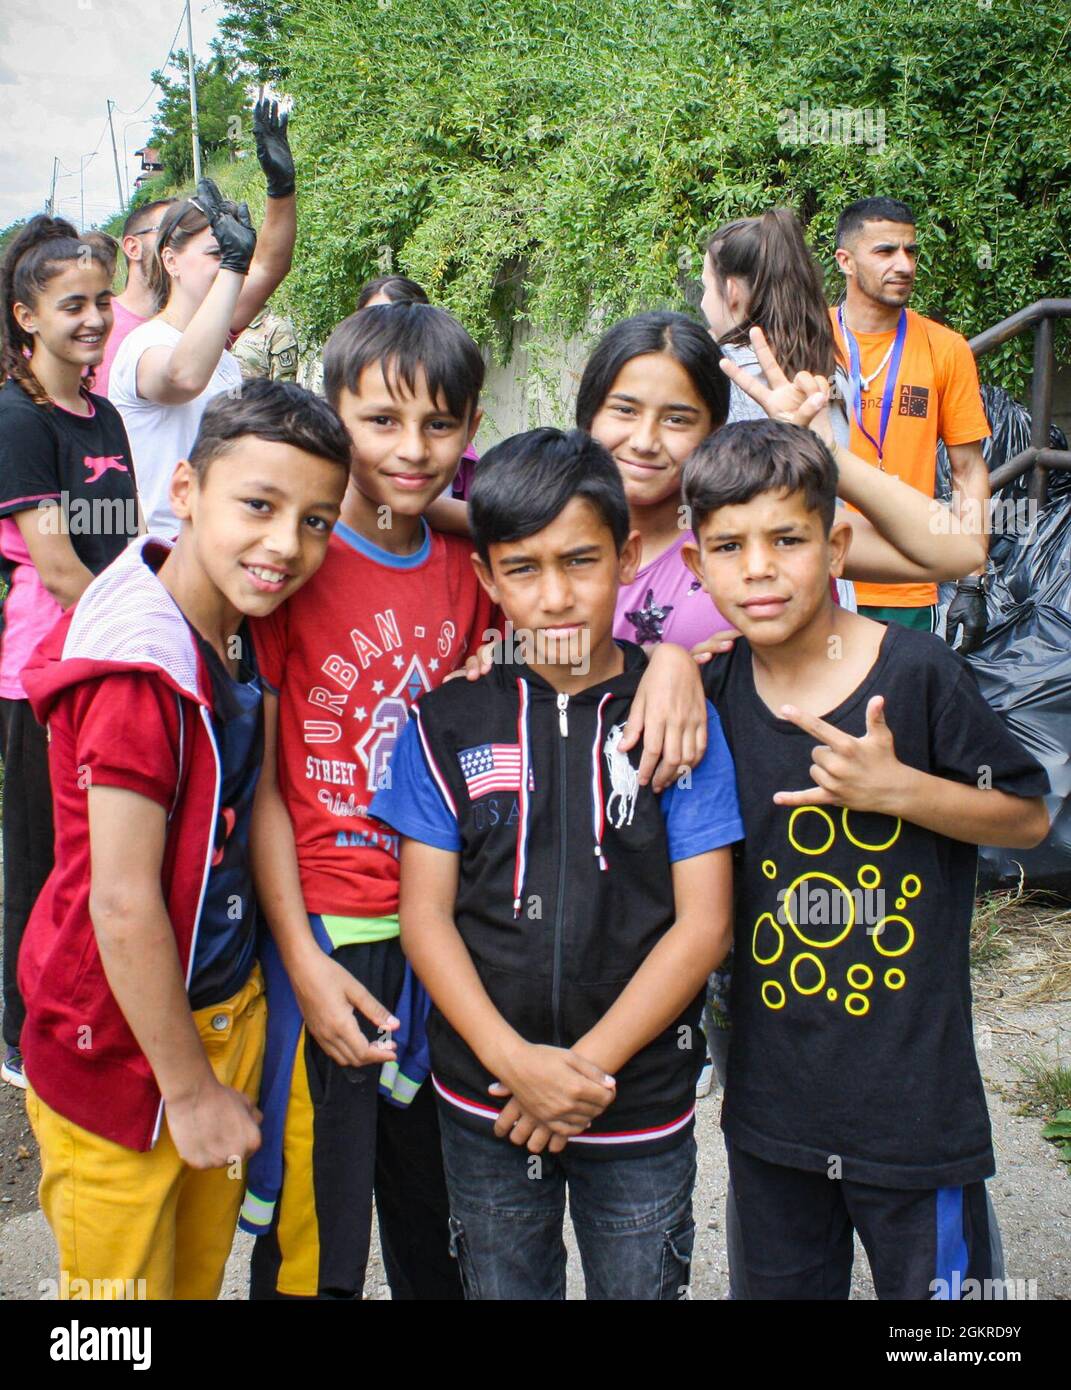 Eine Gruppe von Kindern posiert für ein Bild während einer Säuberung entlang einer Brücke in Mitrovica/Mitrovicë, Kosovo, am 19. Juni 2021. Mehr als 40 Menschen halfen freiwillig bei der Säuberung, darunter US-Soldaten und Schweizer Soldaten sowie Bewohner aus Nord- und Süd-Mitrovica/Mitrovicë. Stockfoto